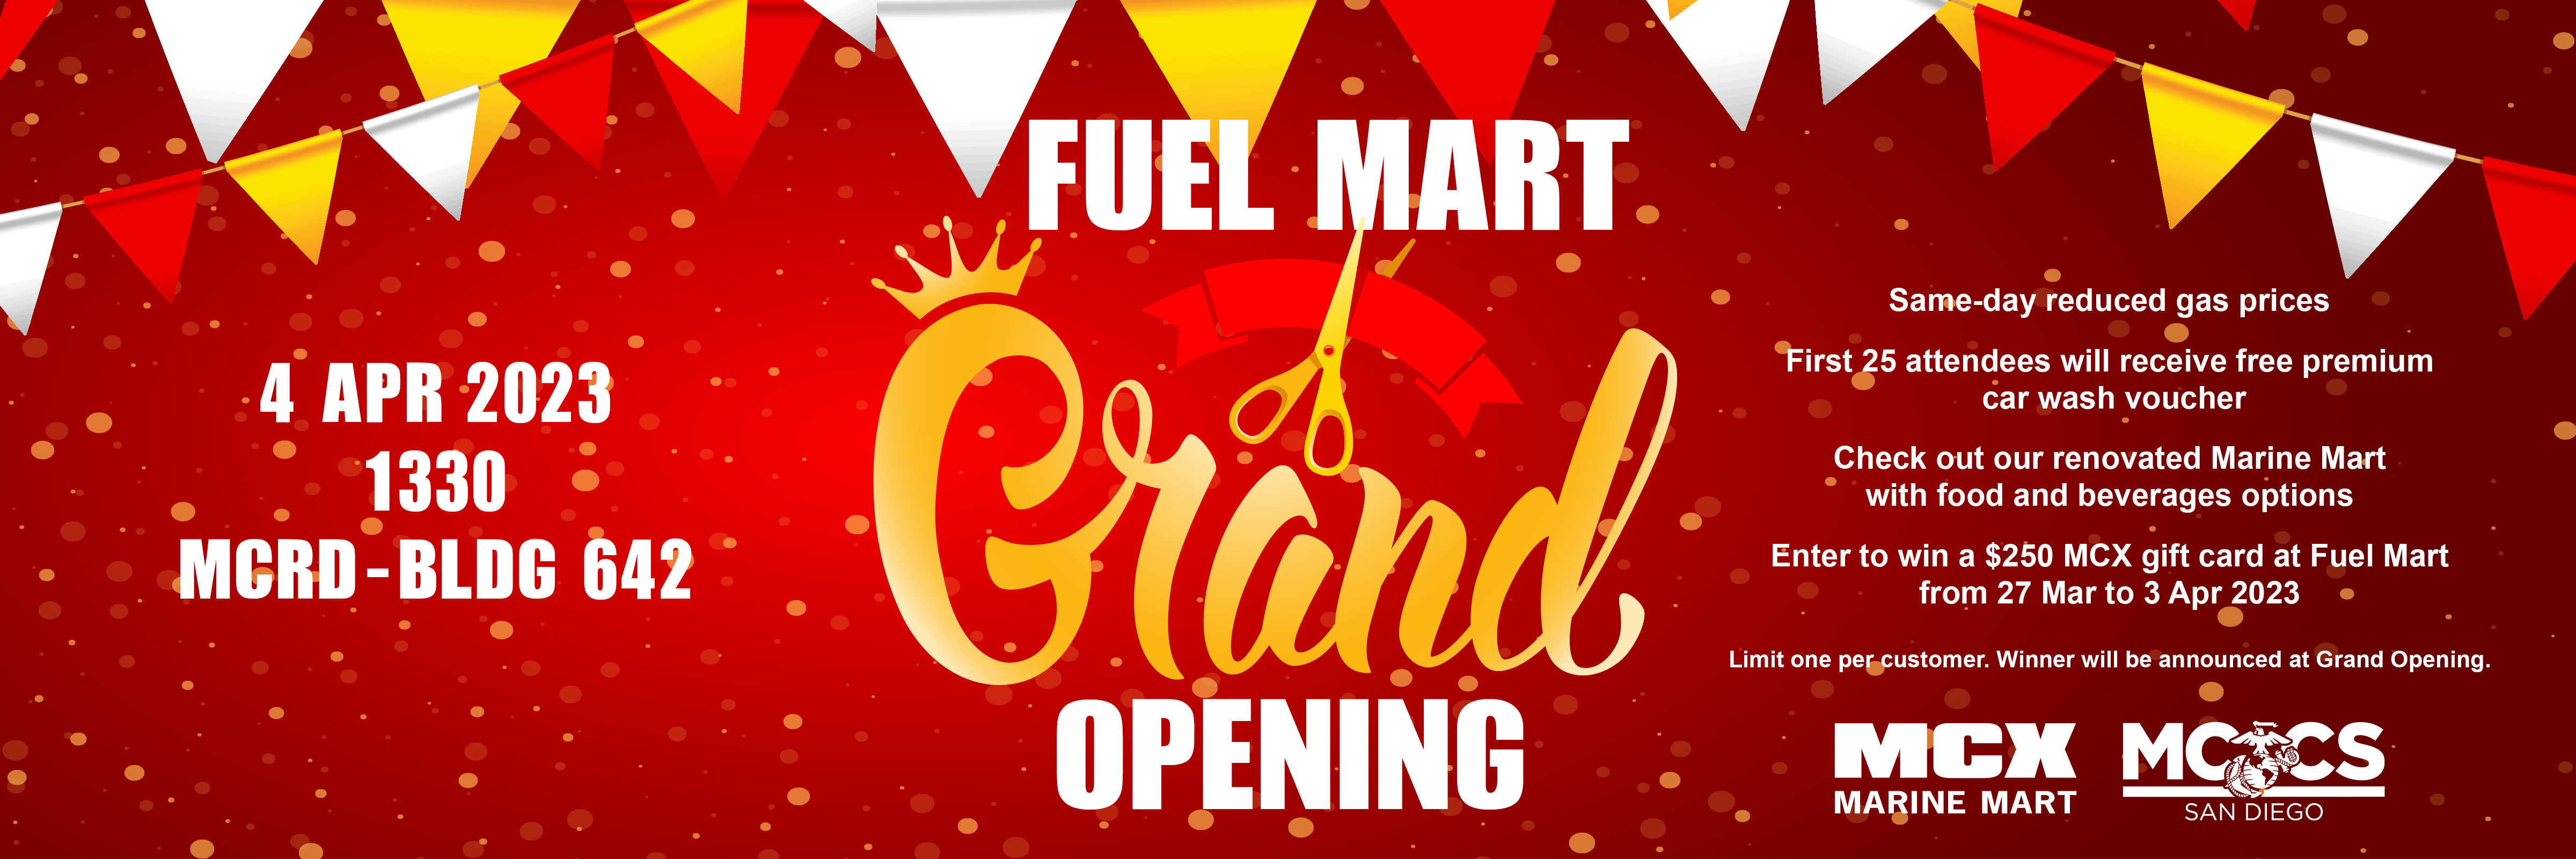 MCCS San Diego Fuel Mart Grand Opening 2400x800 homepage slide.jpg